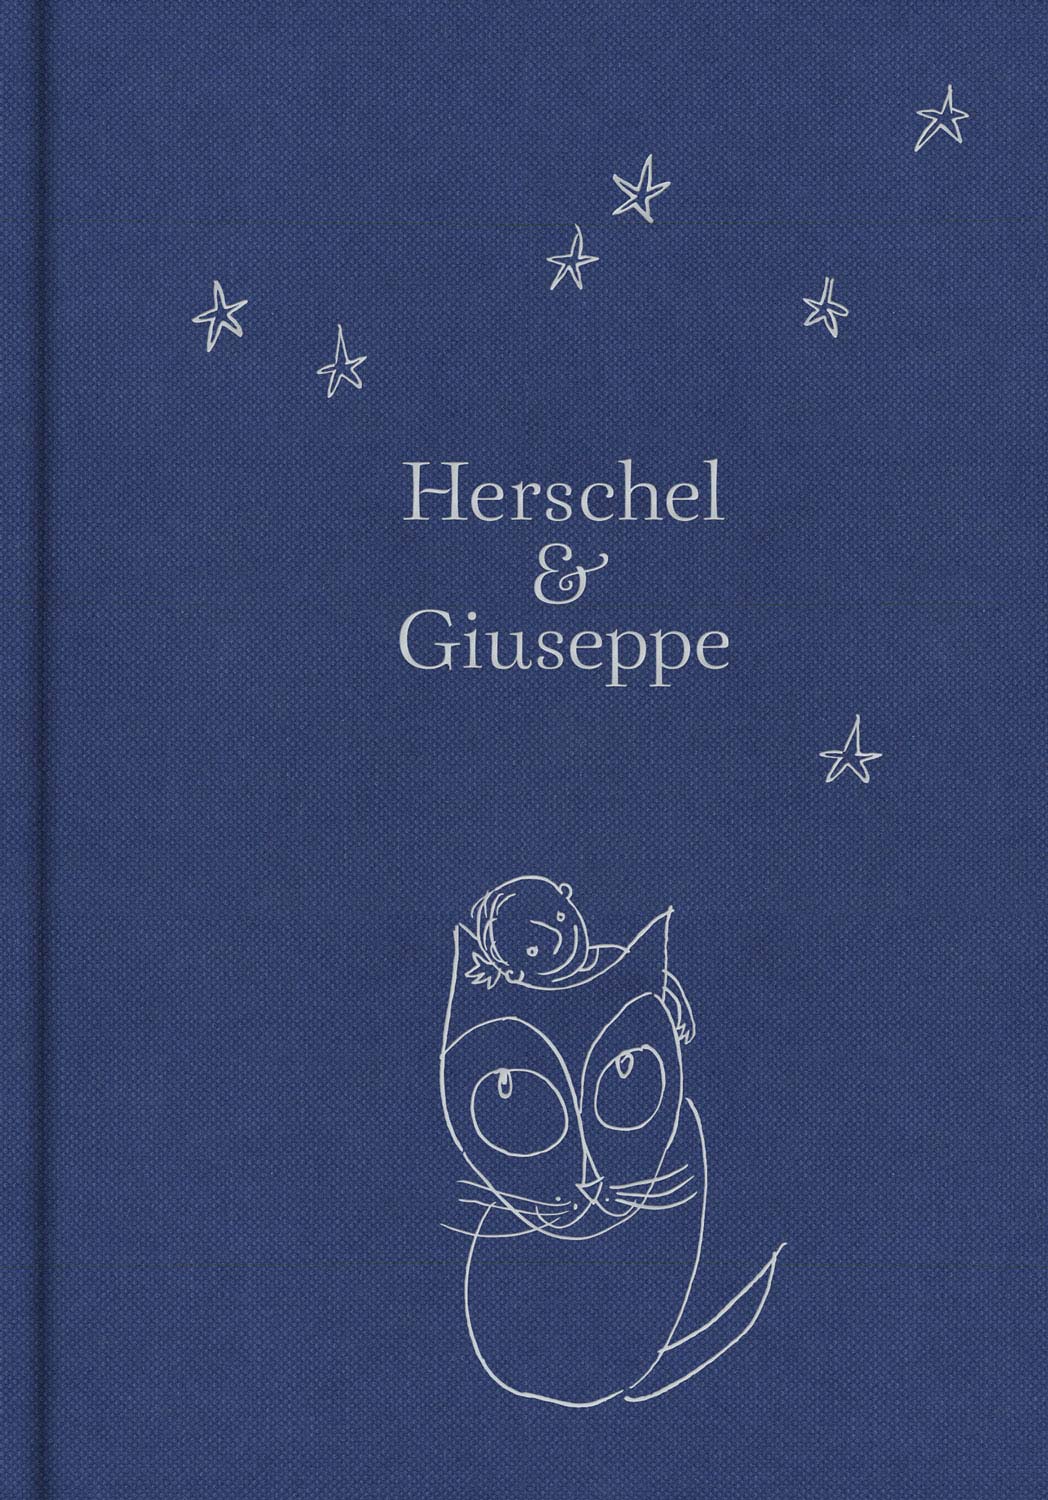 Herschel and Giuseppe